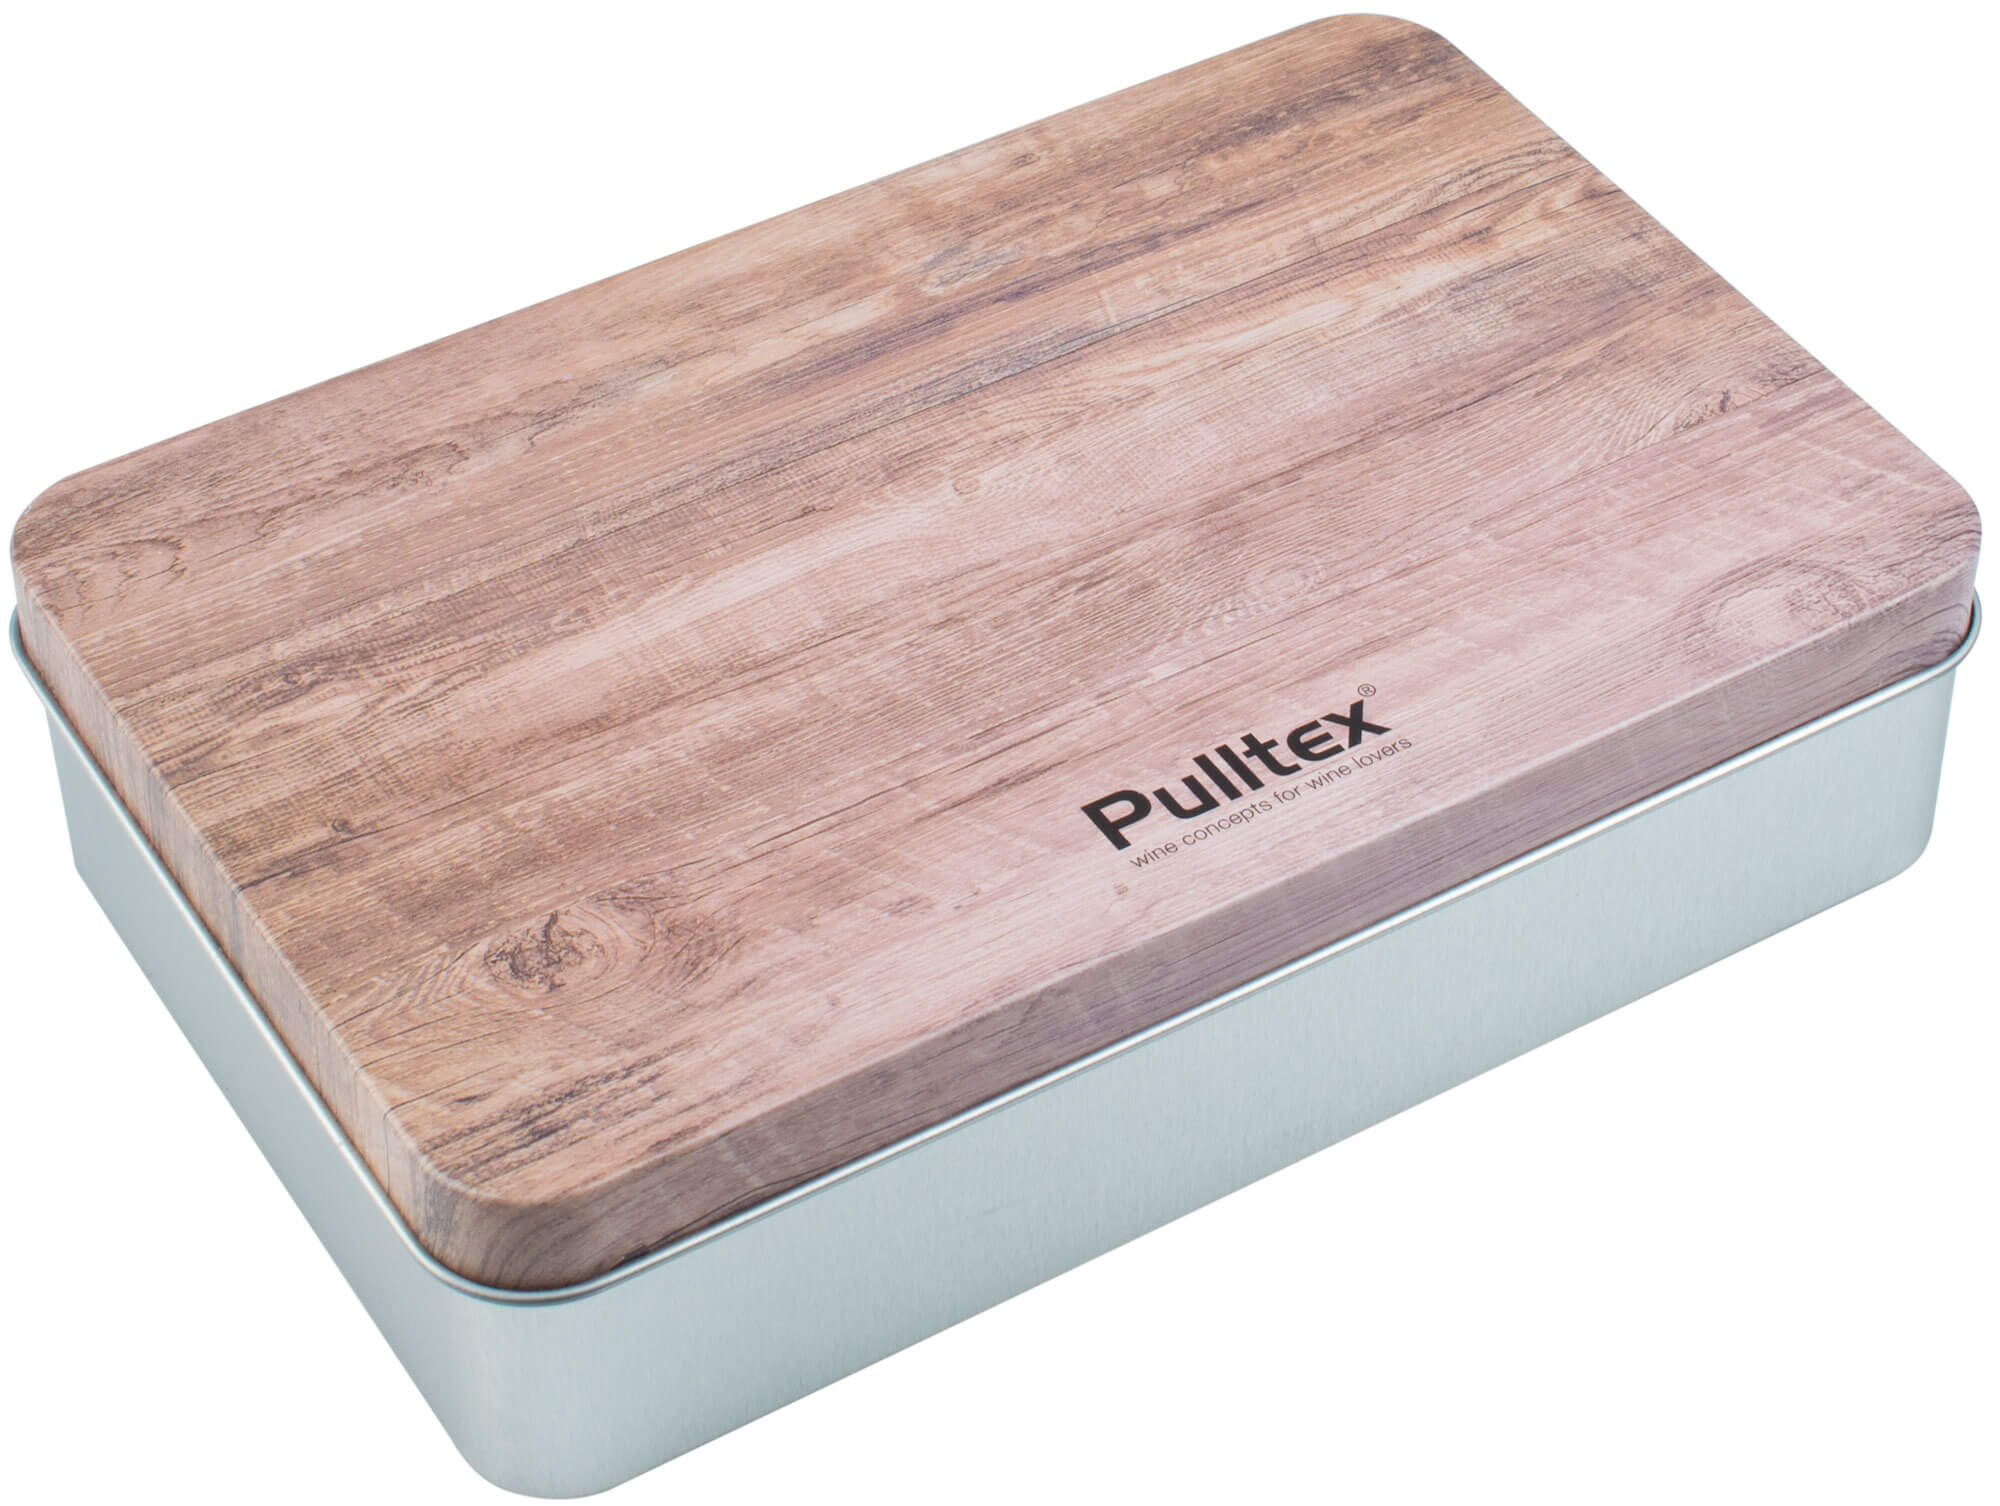 Wein Set de Luxe, Pulltex (Box)